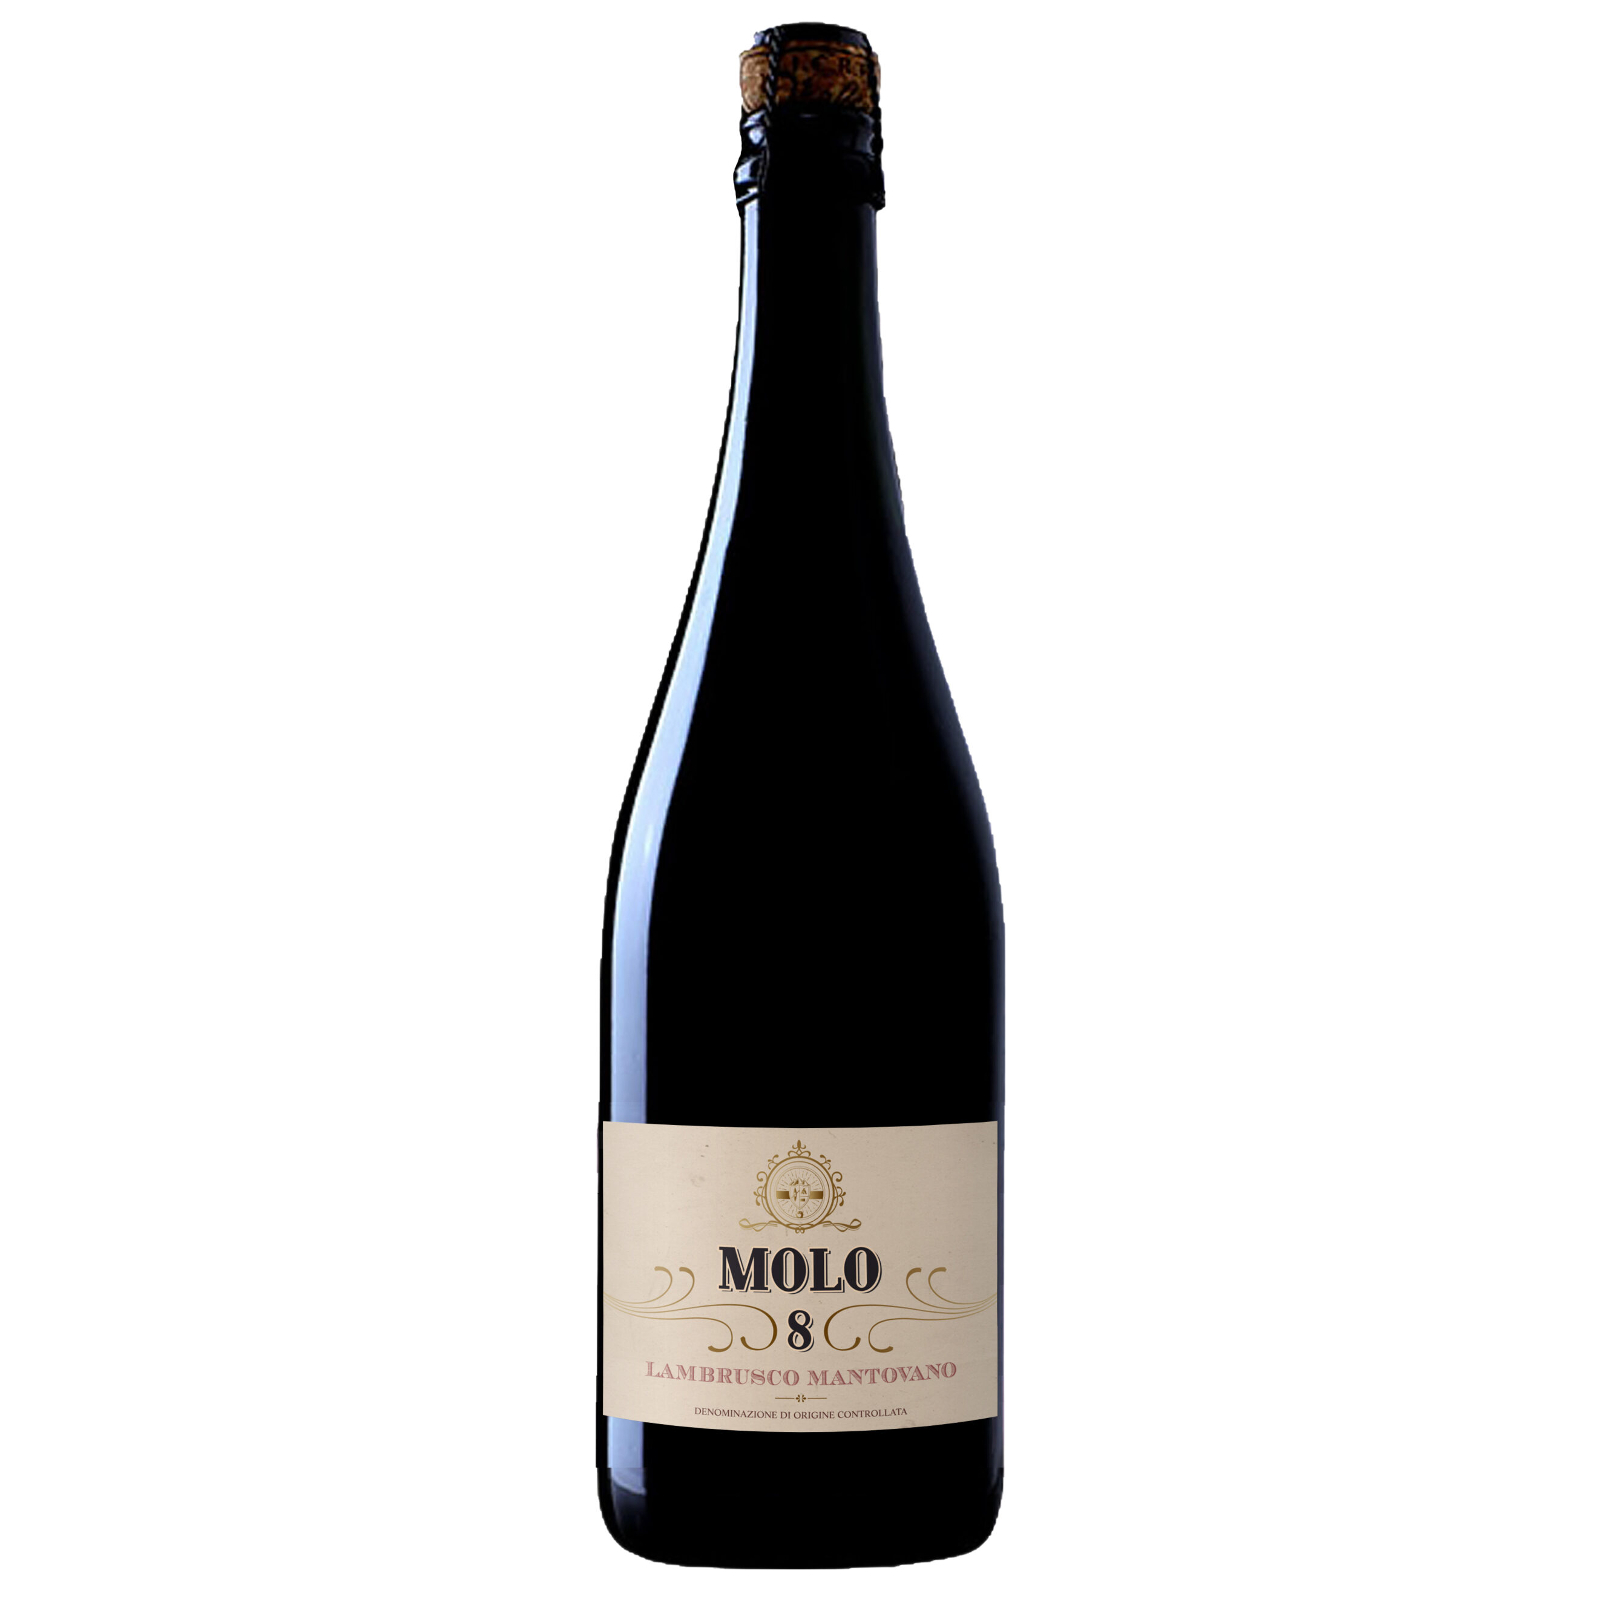 Molo 8 Lambrusco Mantovano Sparkling Red Wine – Italy